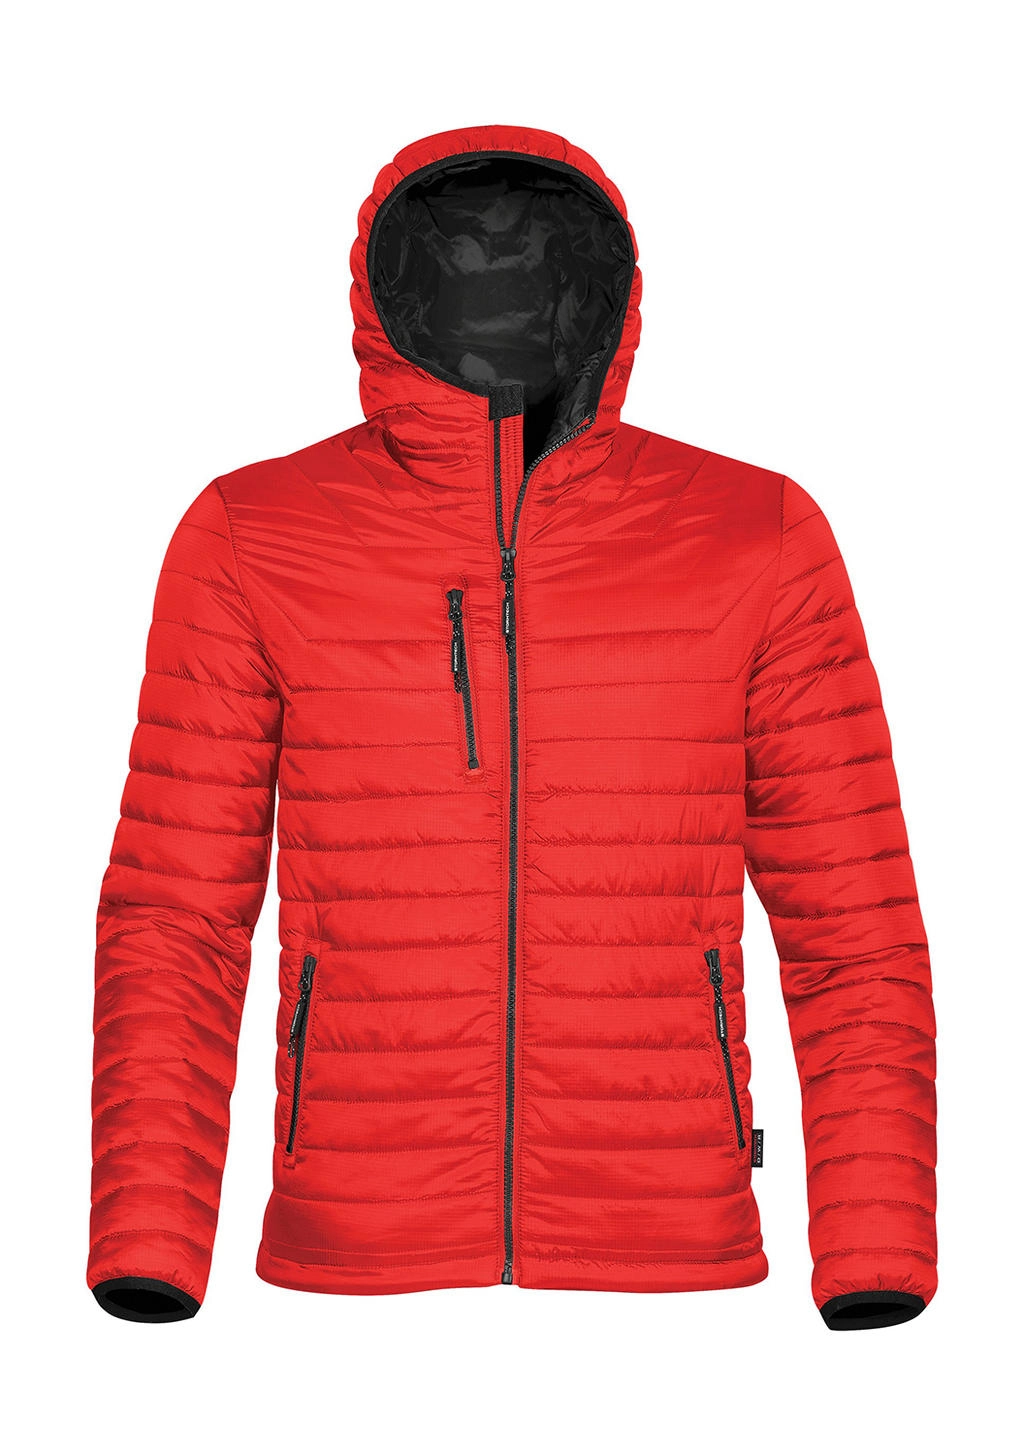 Gravity Thermal Jacket zum Besticken und Bedrucken in der Farbe True Red/Black mit Ihren Logo, Schriftzug oder Motiv.